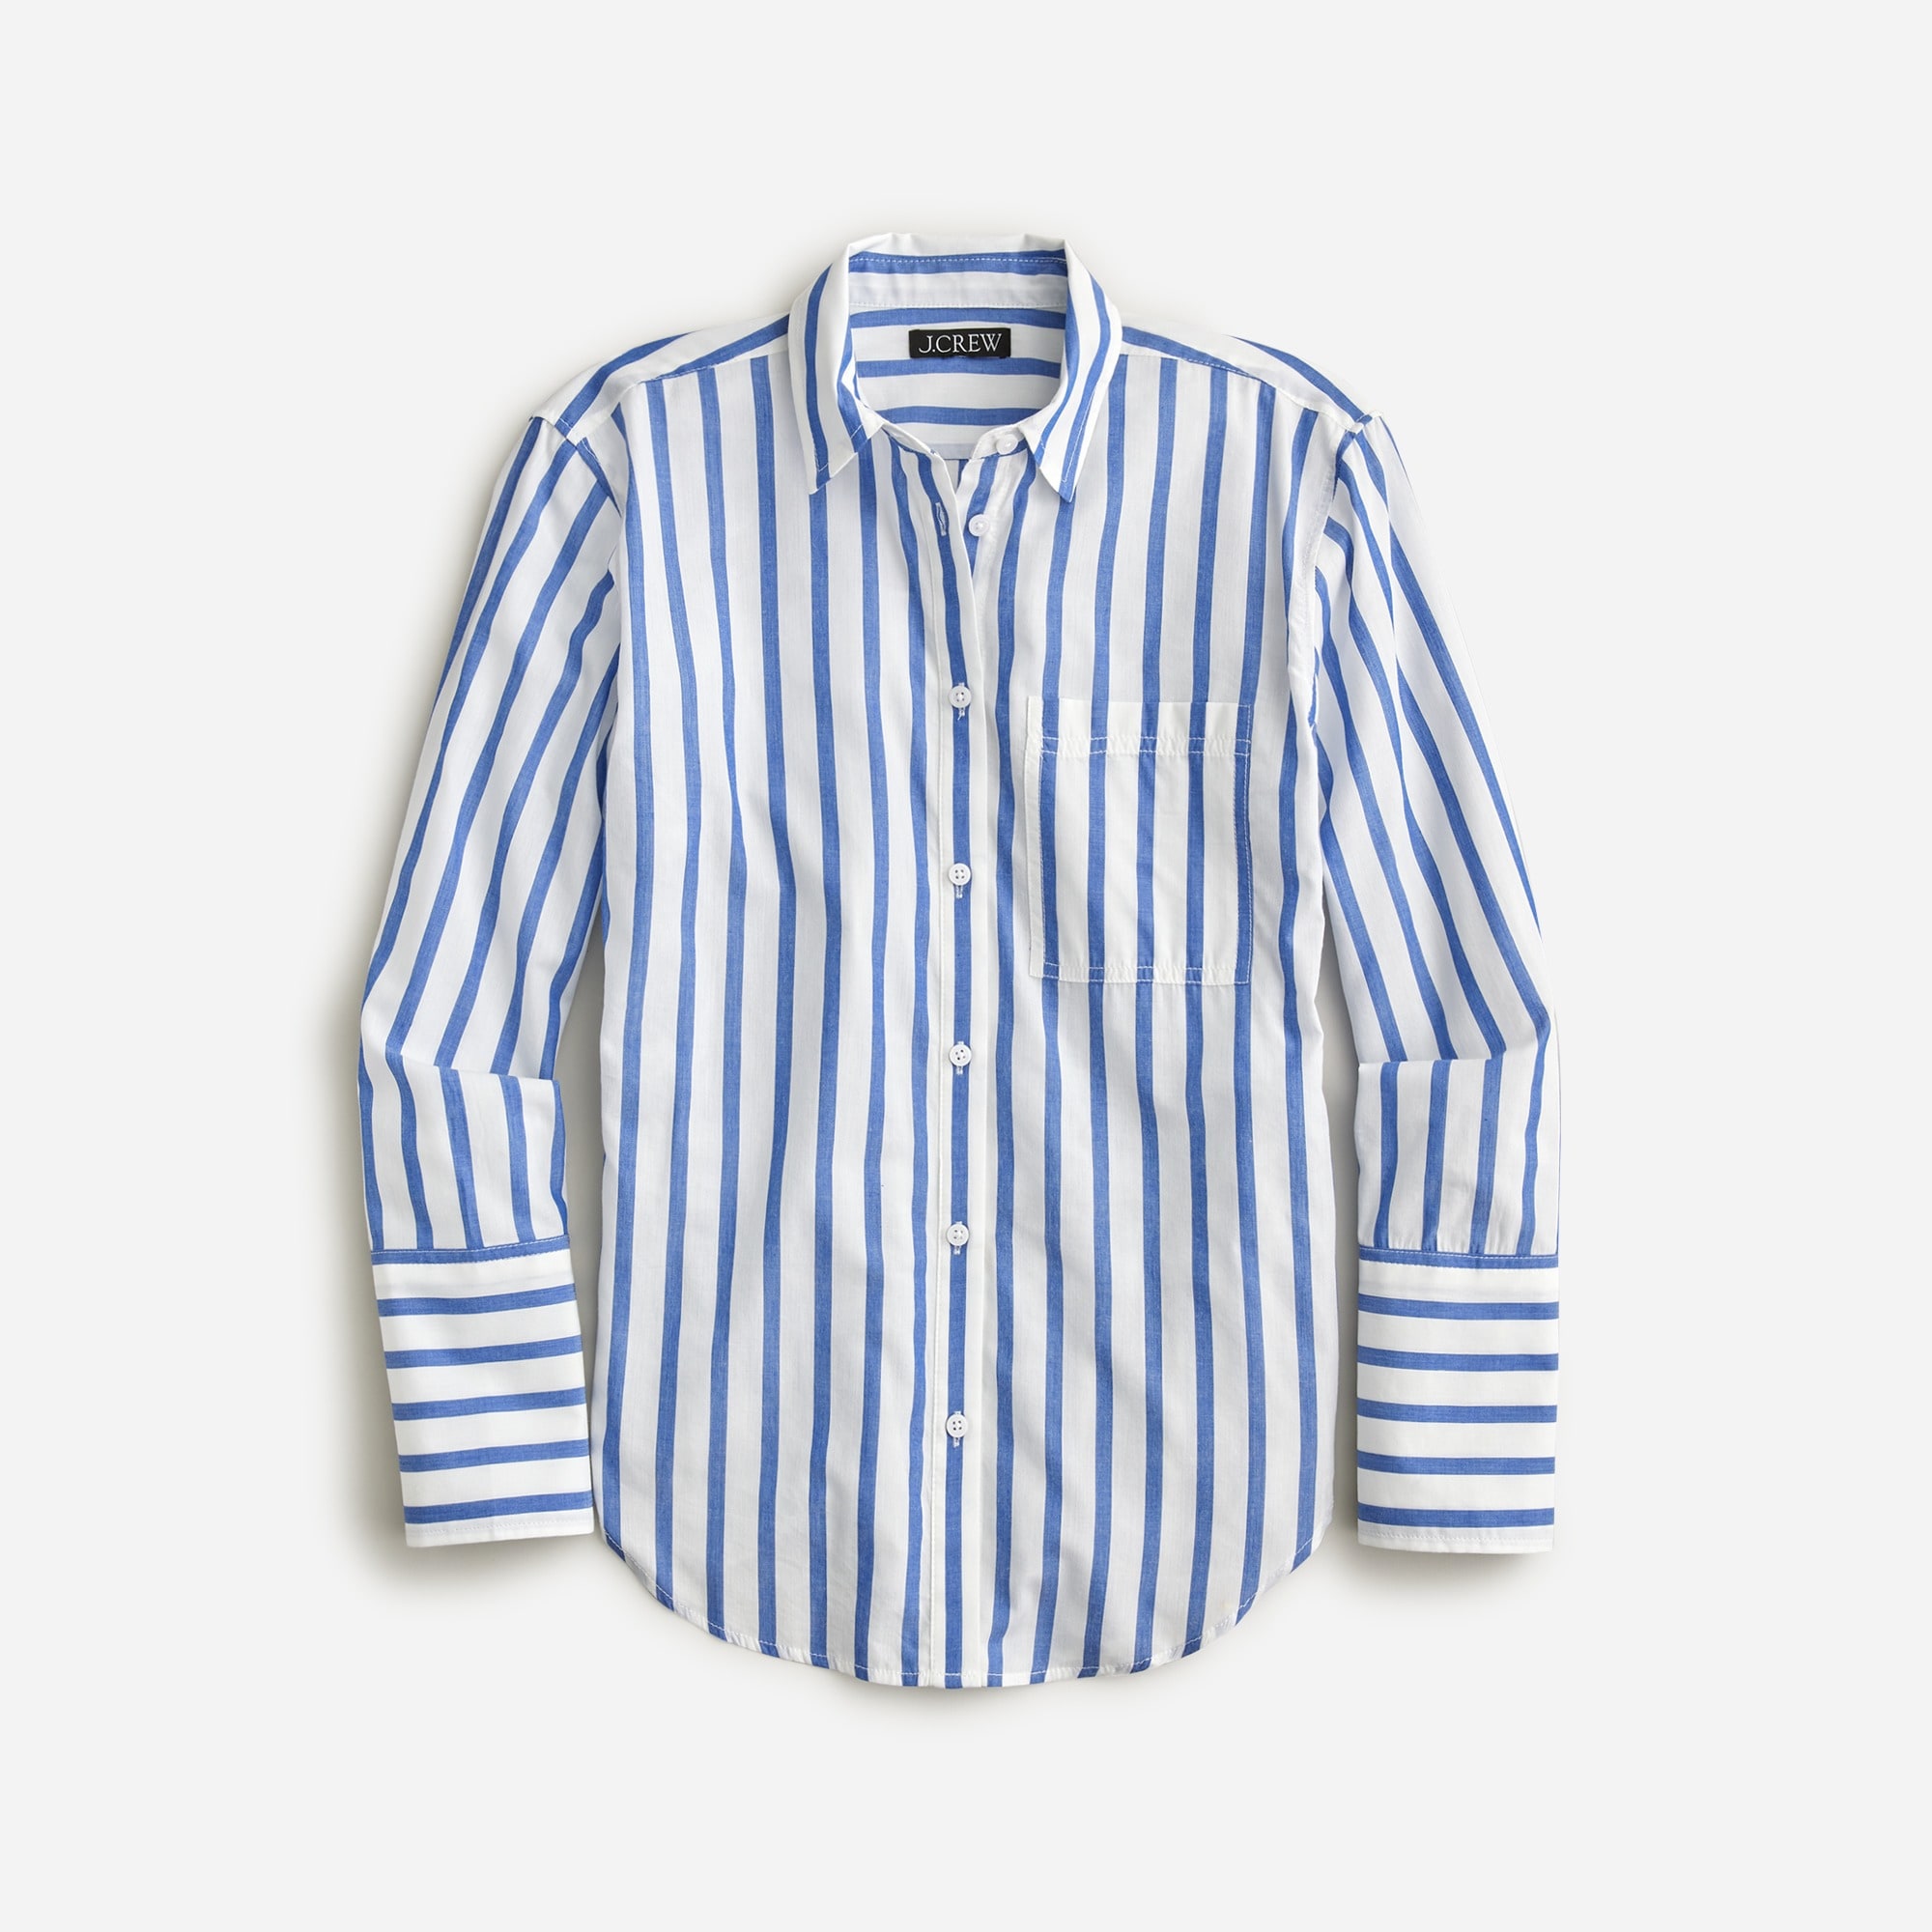 Garçon cotton voile shirt in stripe